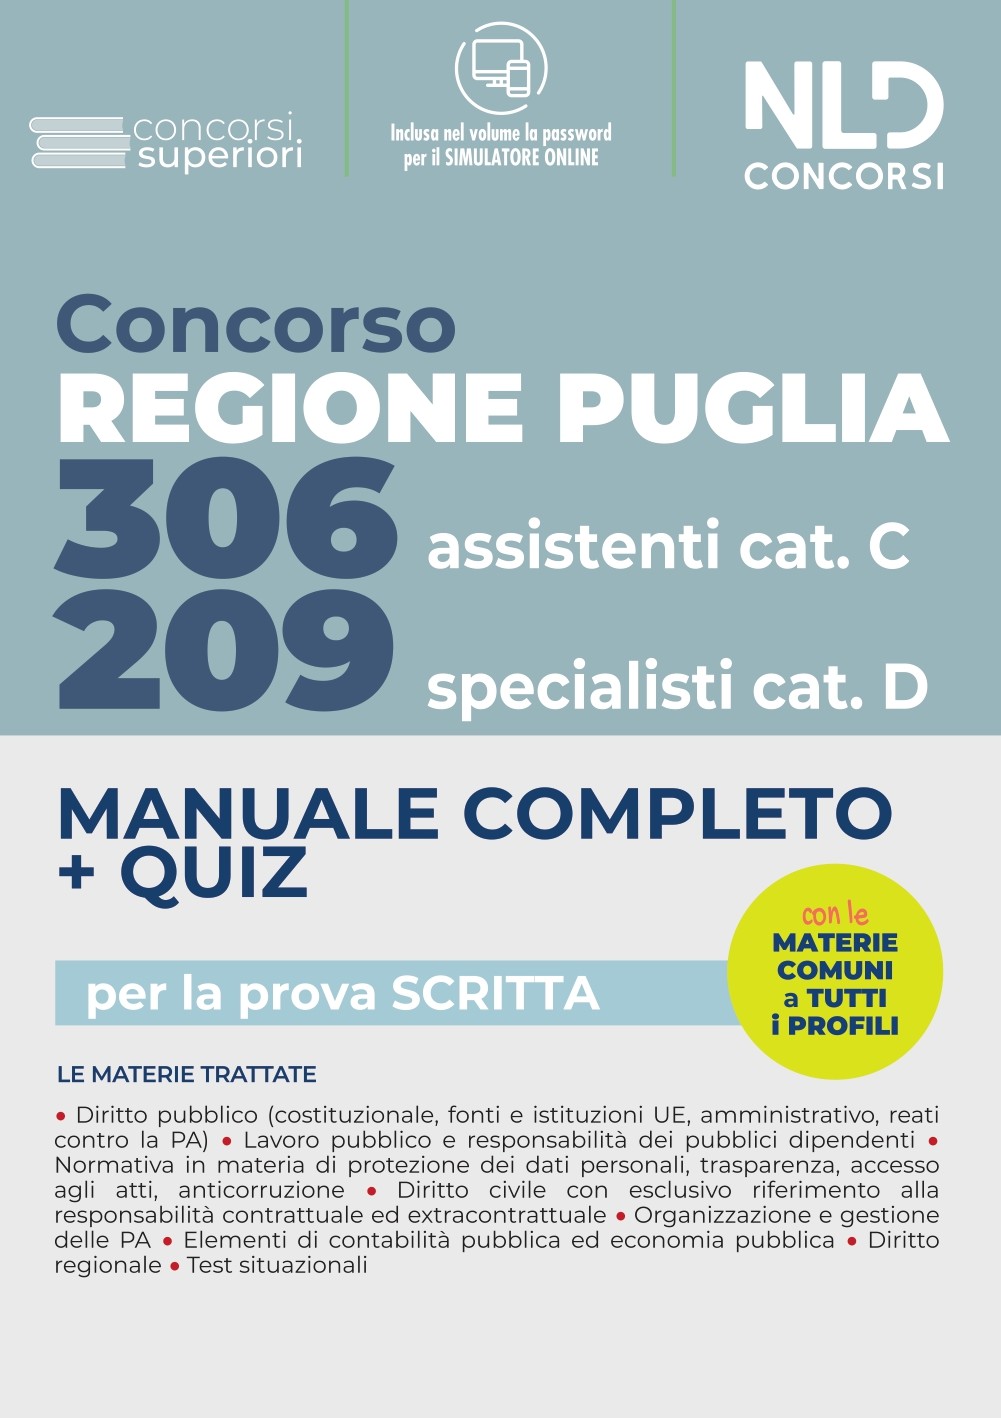 Concorso Regione Puglia 2022: Manuale Completo per 209 Specialisti cat. D + 306 Assistenti Cat. CVari profili